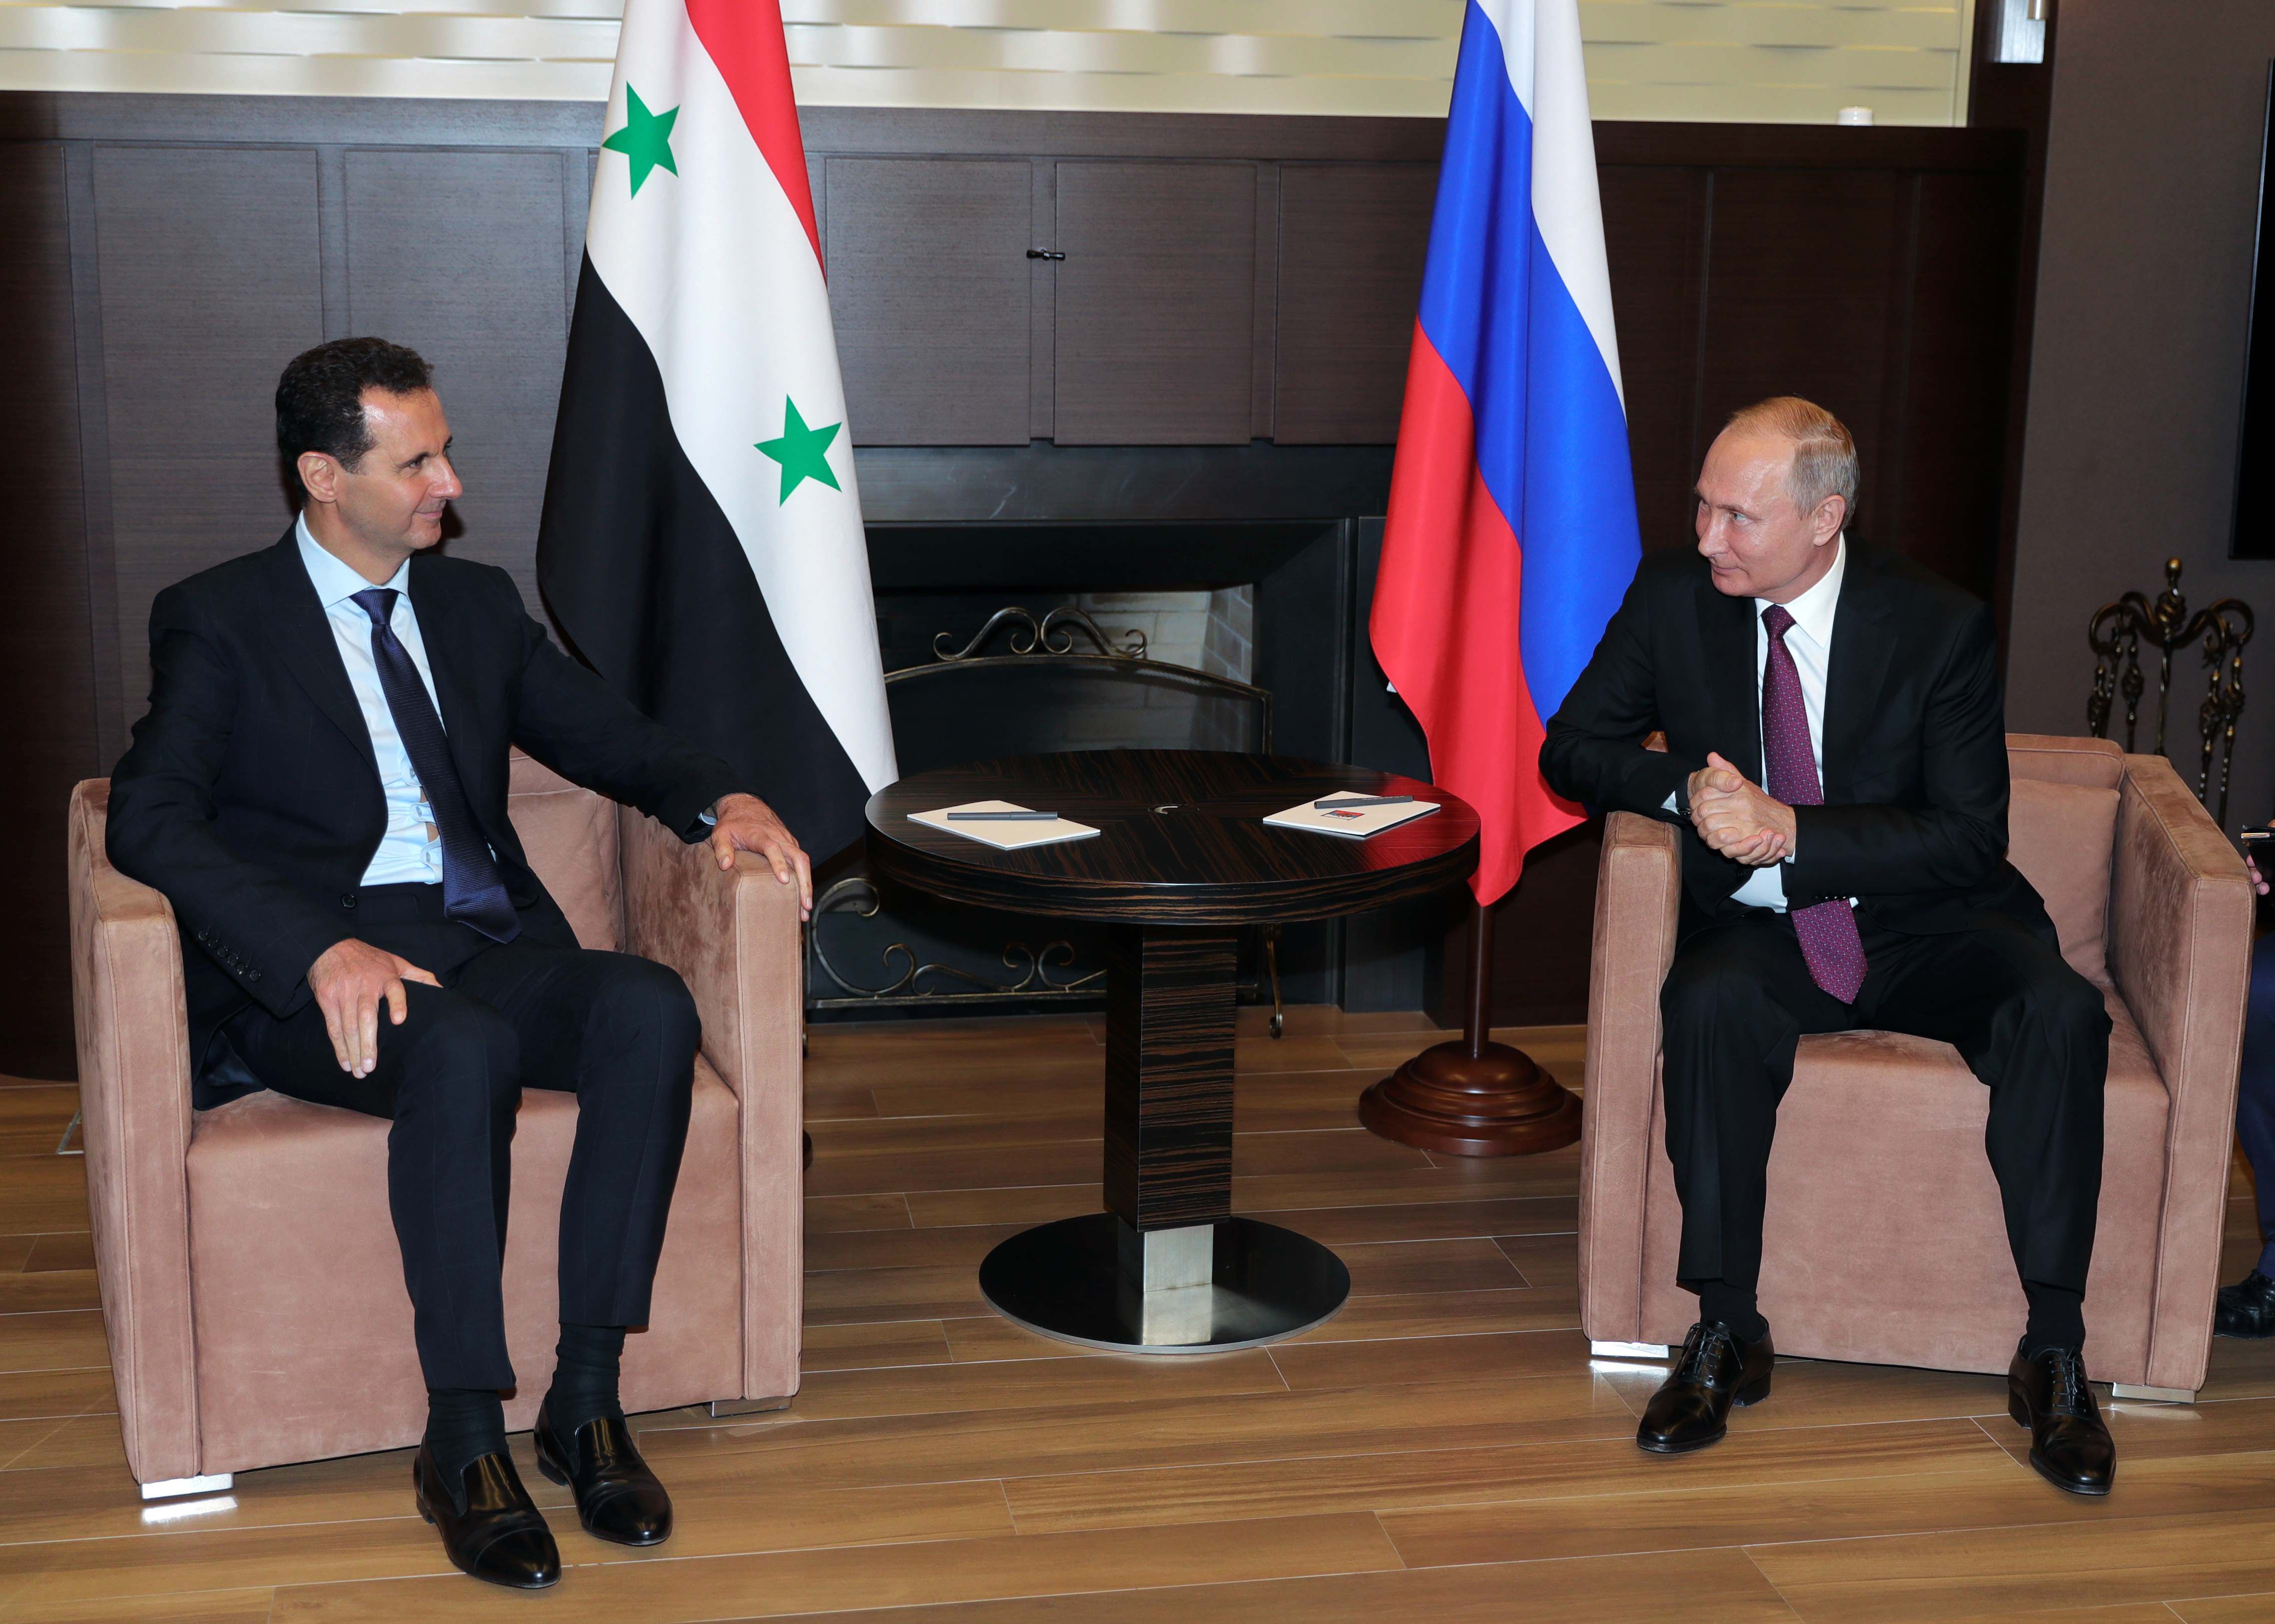 Στη Ρωσία ο Ασαντ για συνομιλίες με τον Πούτιν